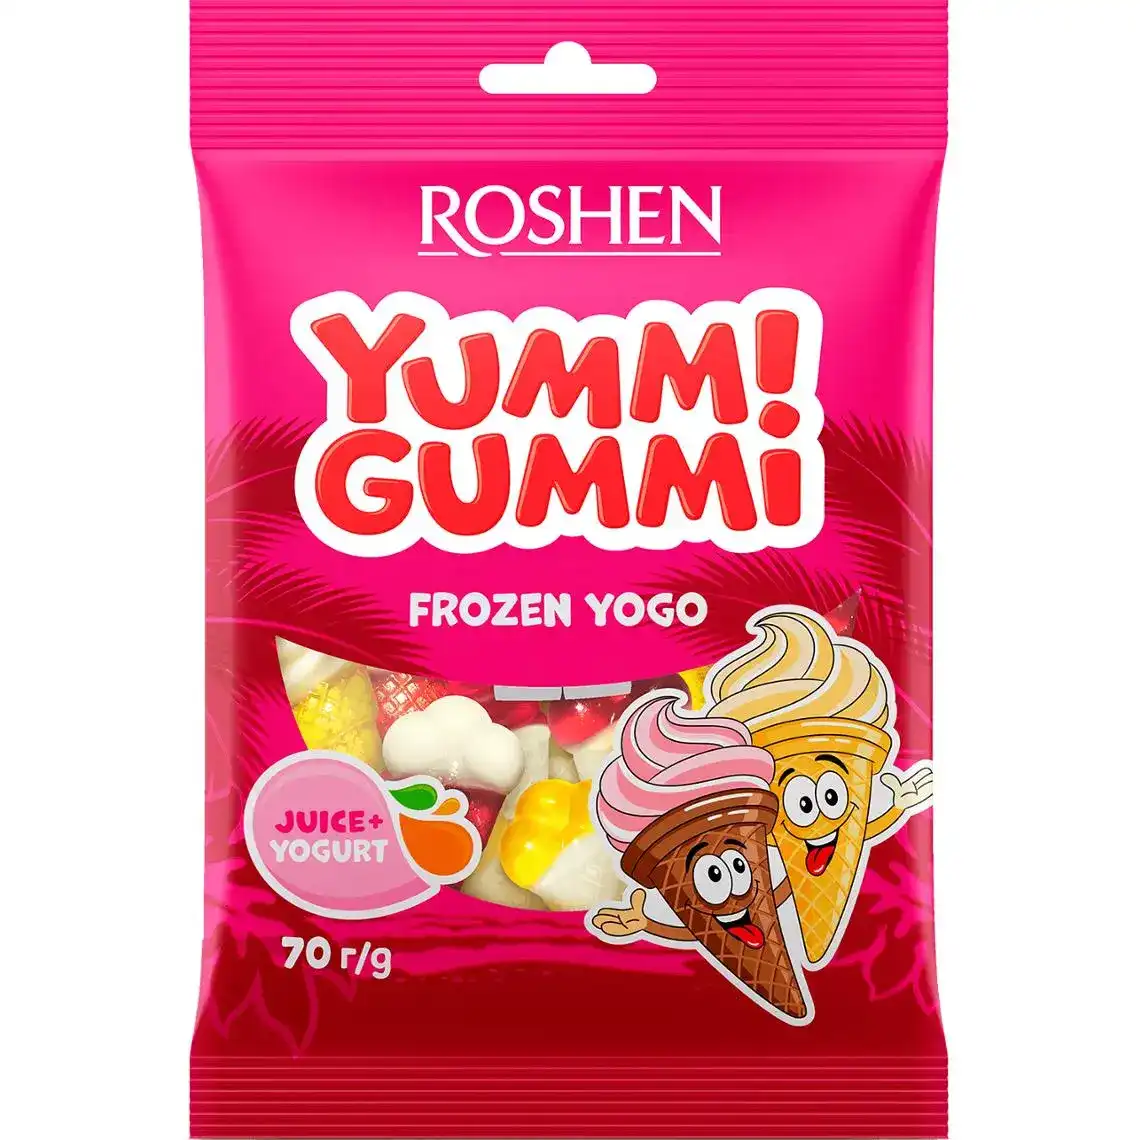 Конфеты Roshen Yummi Gummi Frozen Yogo 70 г